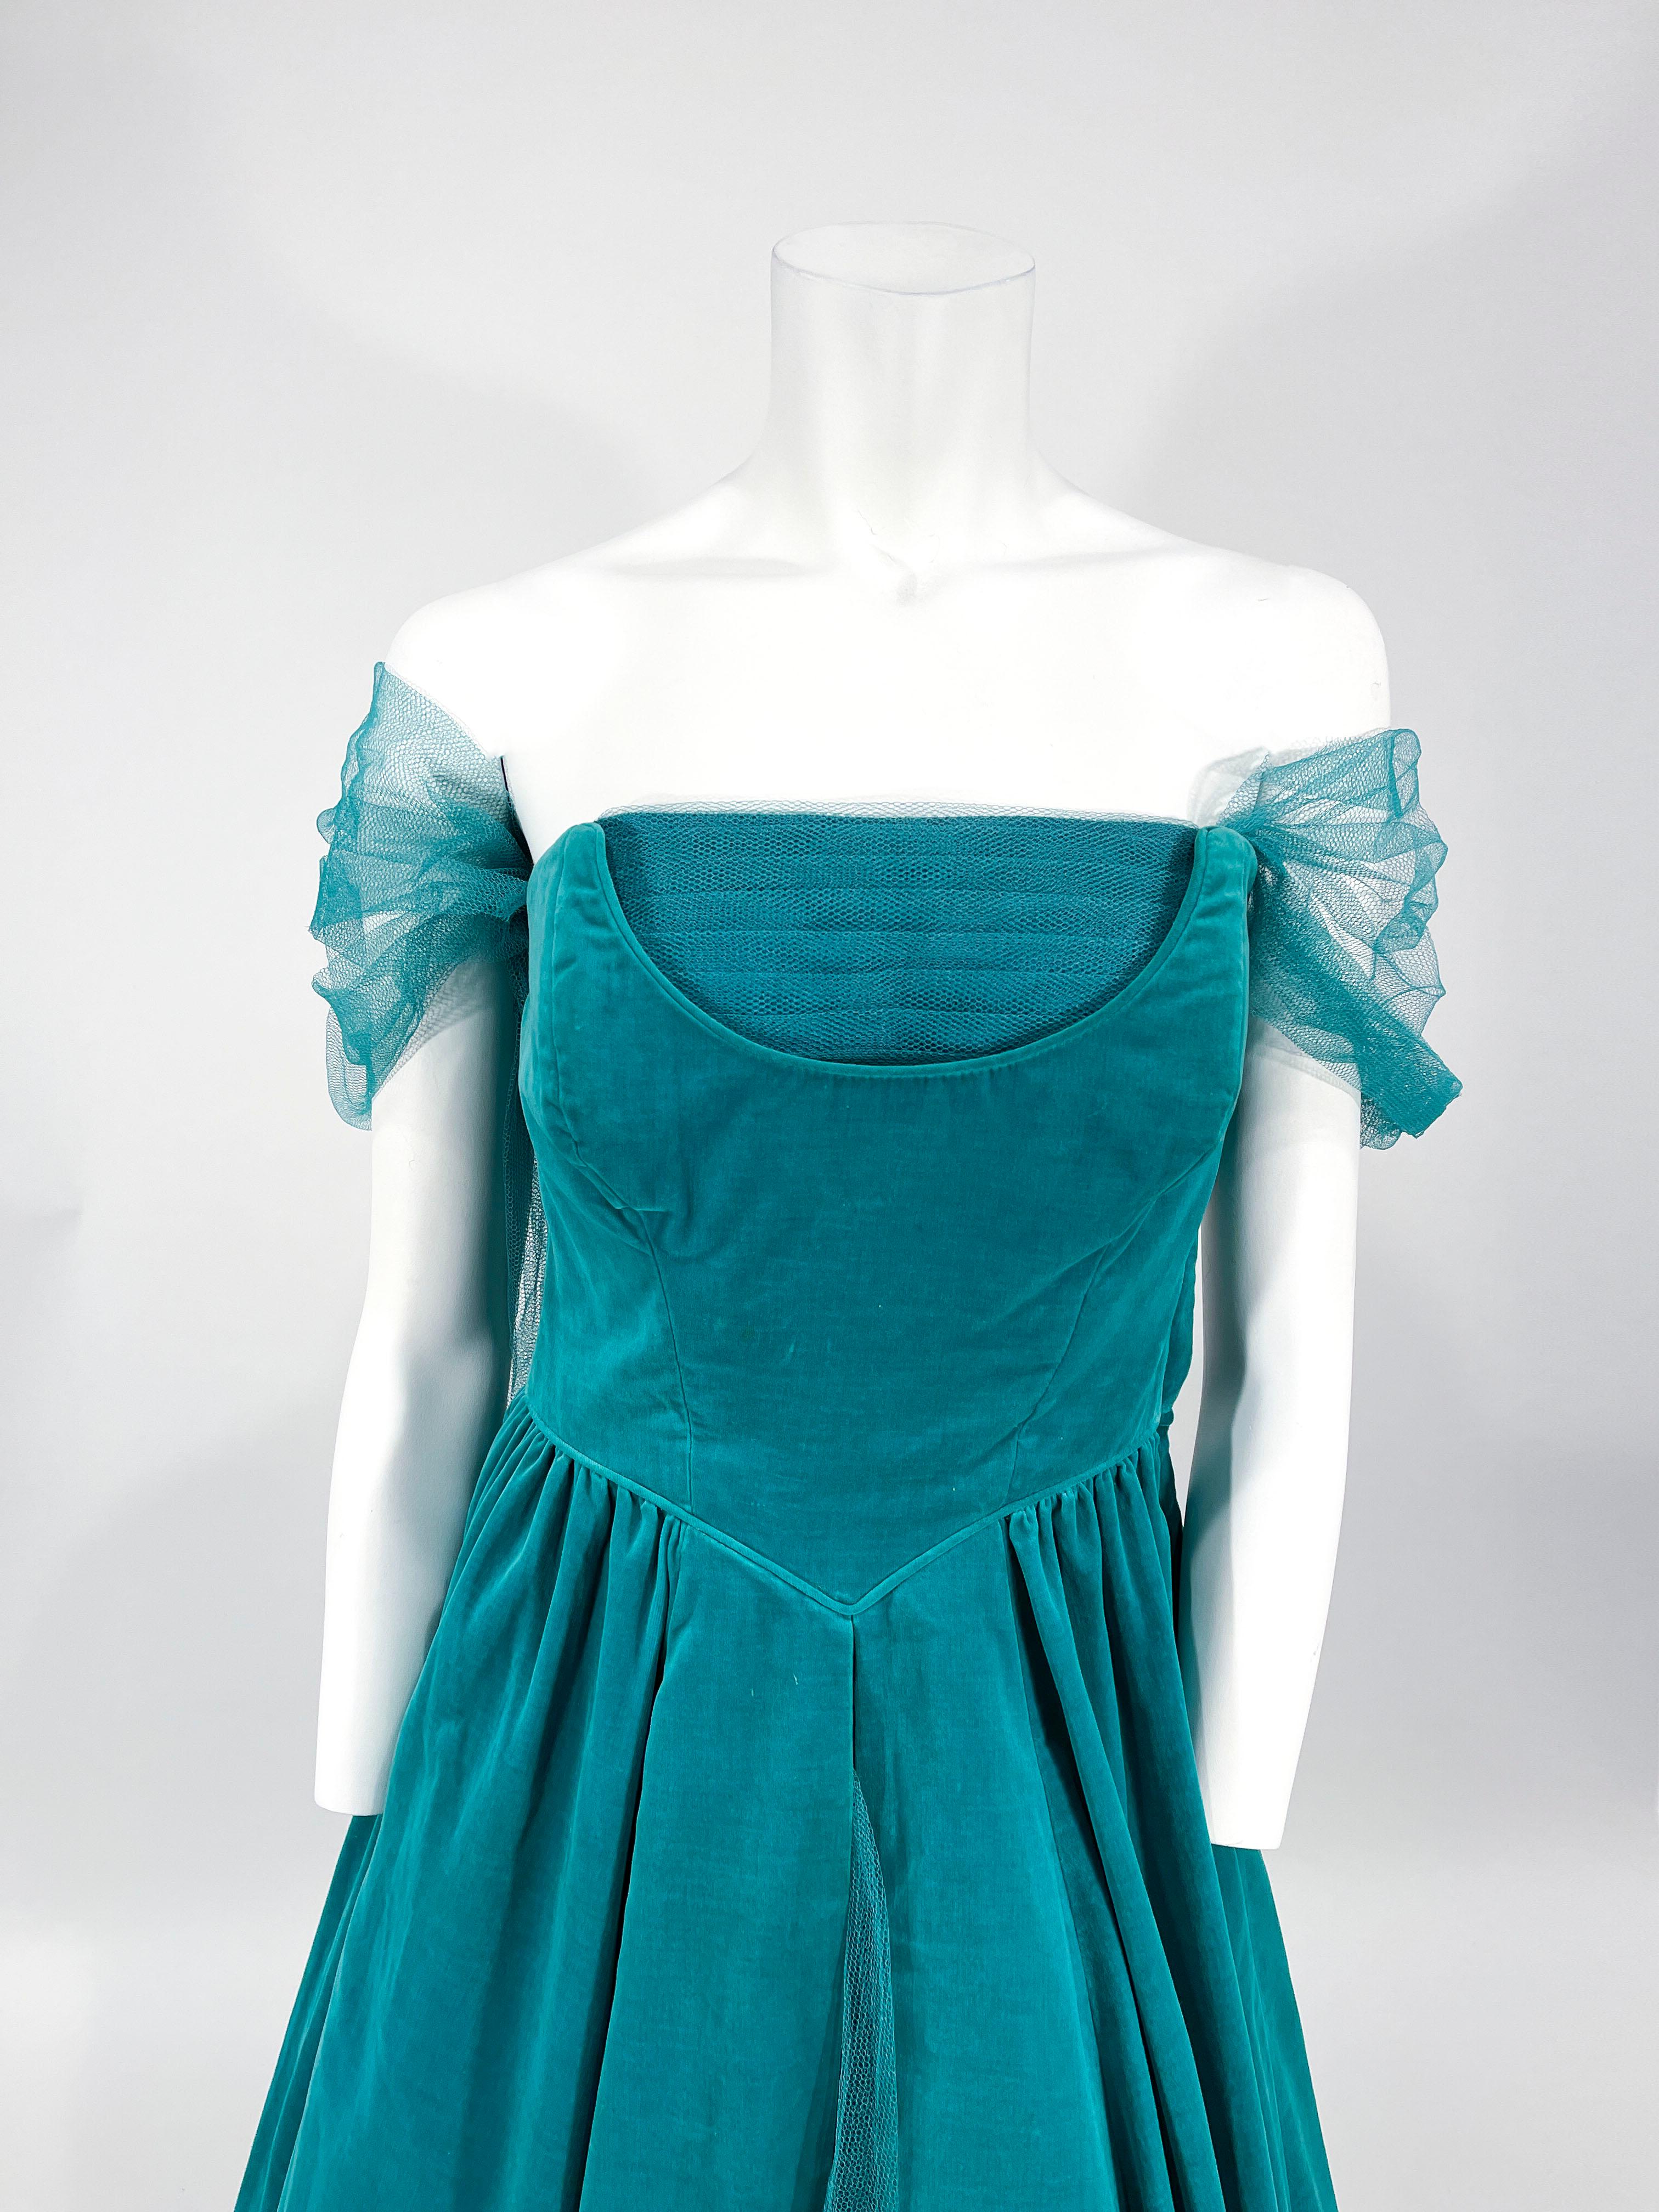 Robe de soirée sans manches en velours de coton vert caselton, longueur thé, faite sur mesure dans les années 1950, avec une encolure modifiée ornée d'un panneau de tulle plissé. Attaché à l'encolure, un pastel de tulle se porte drapé sur les bras